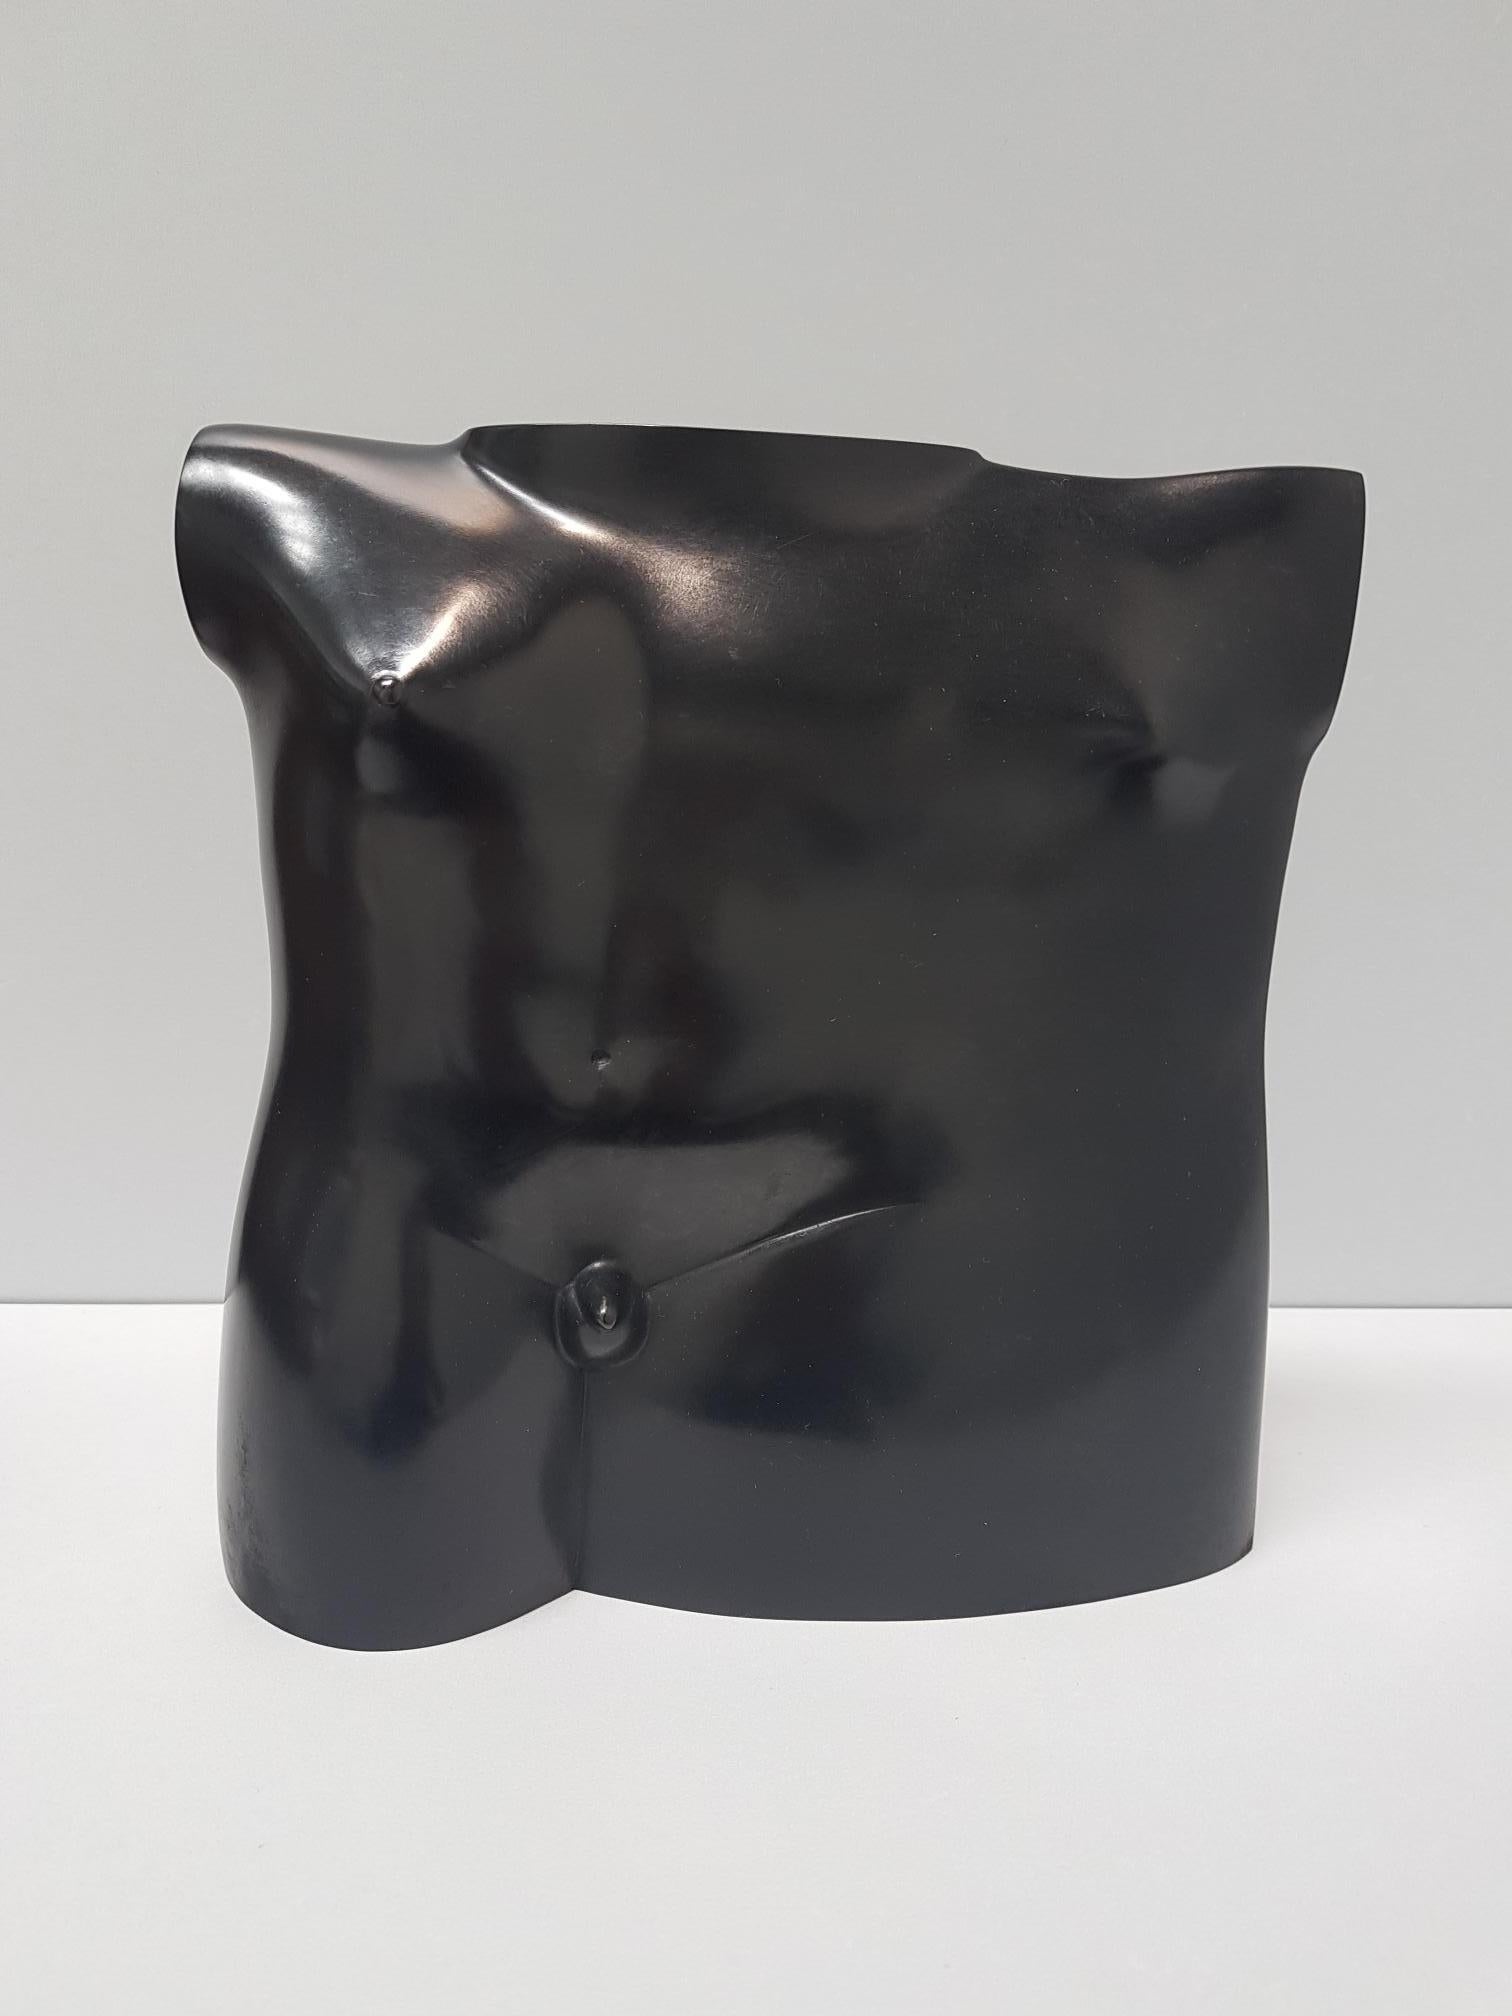 Bustino Il Maschio Bronze Sculpture Contemporary In Stock